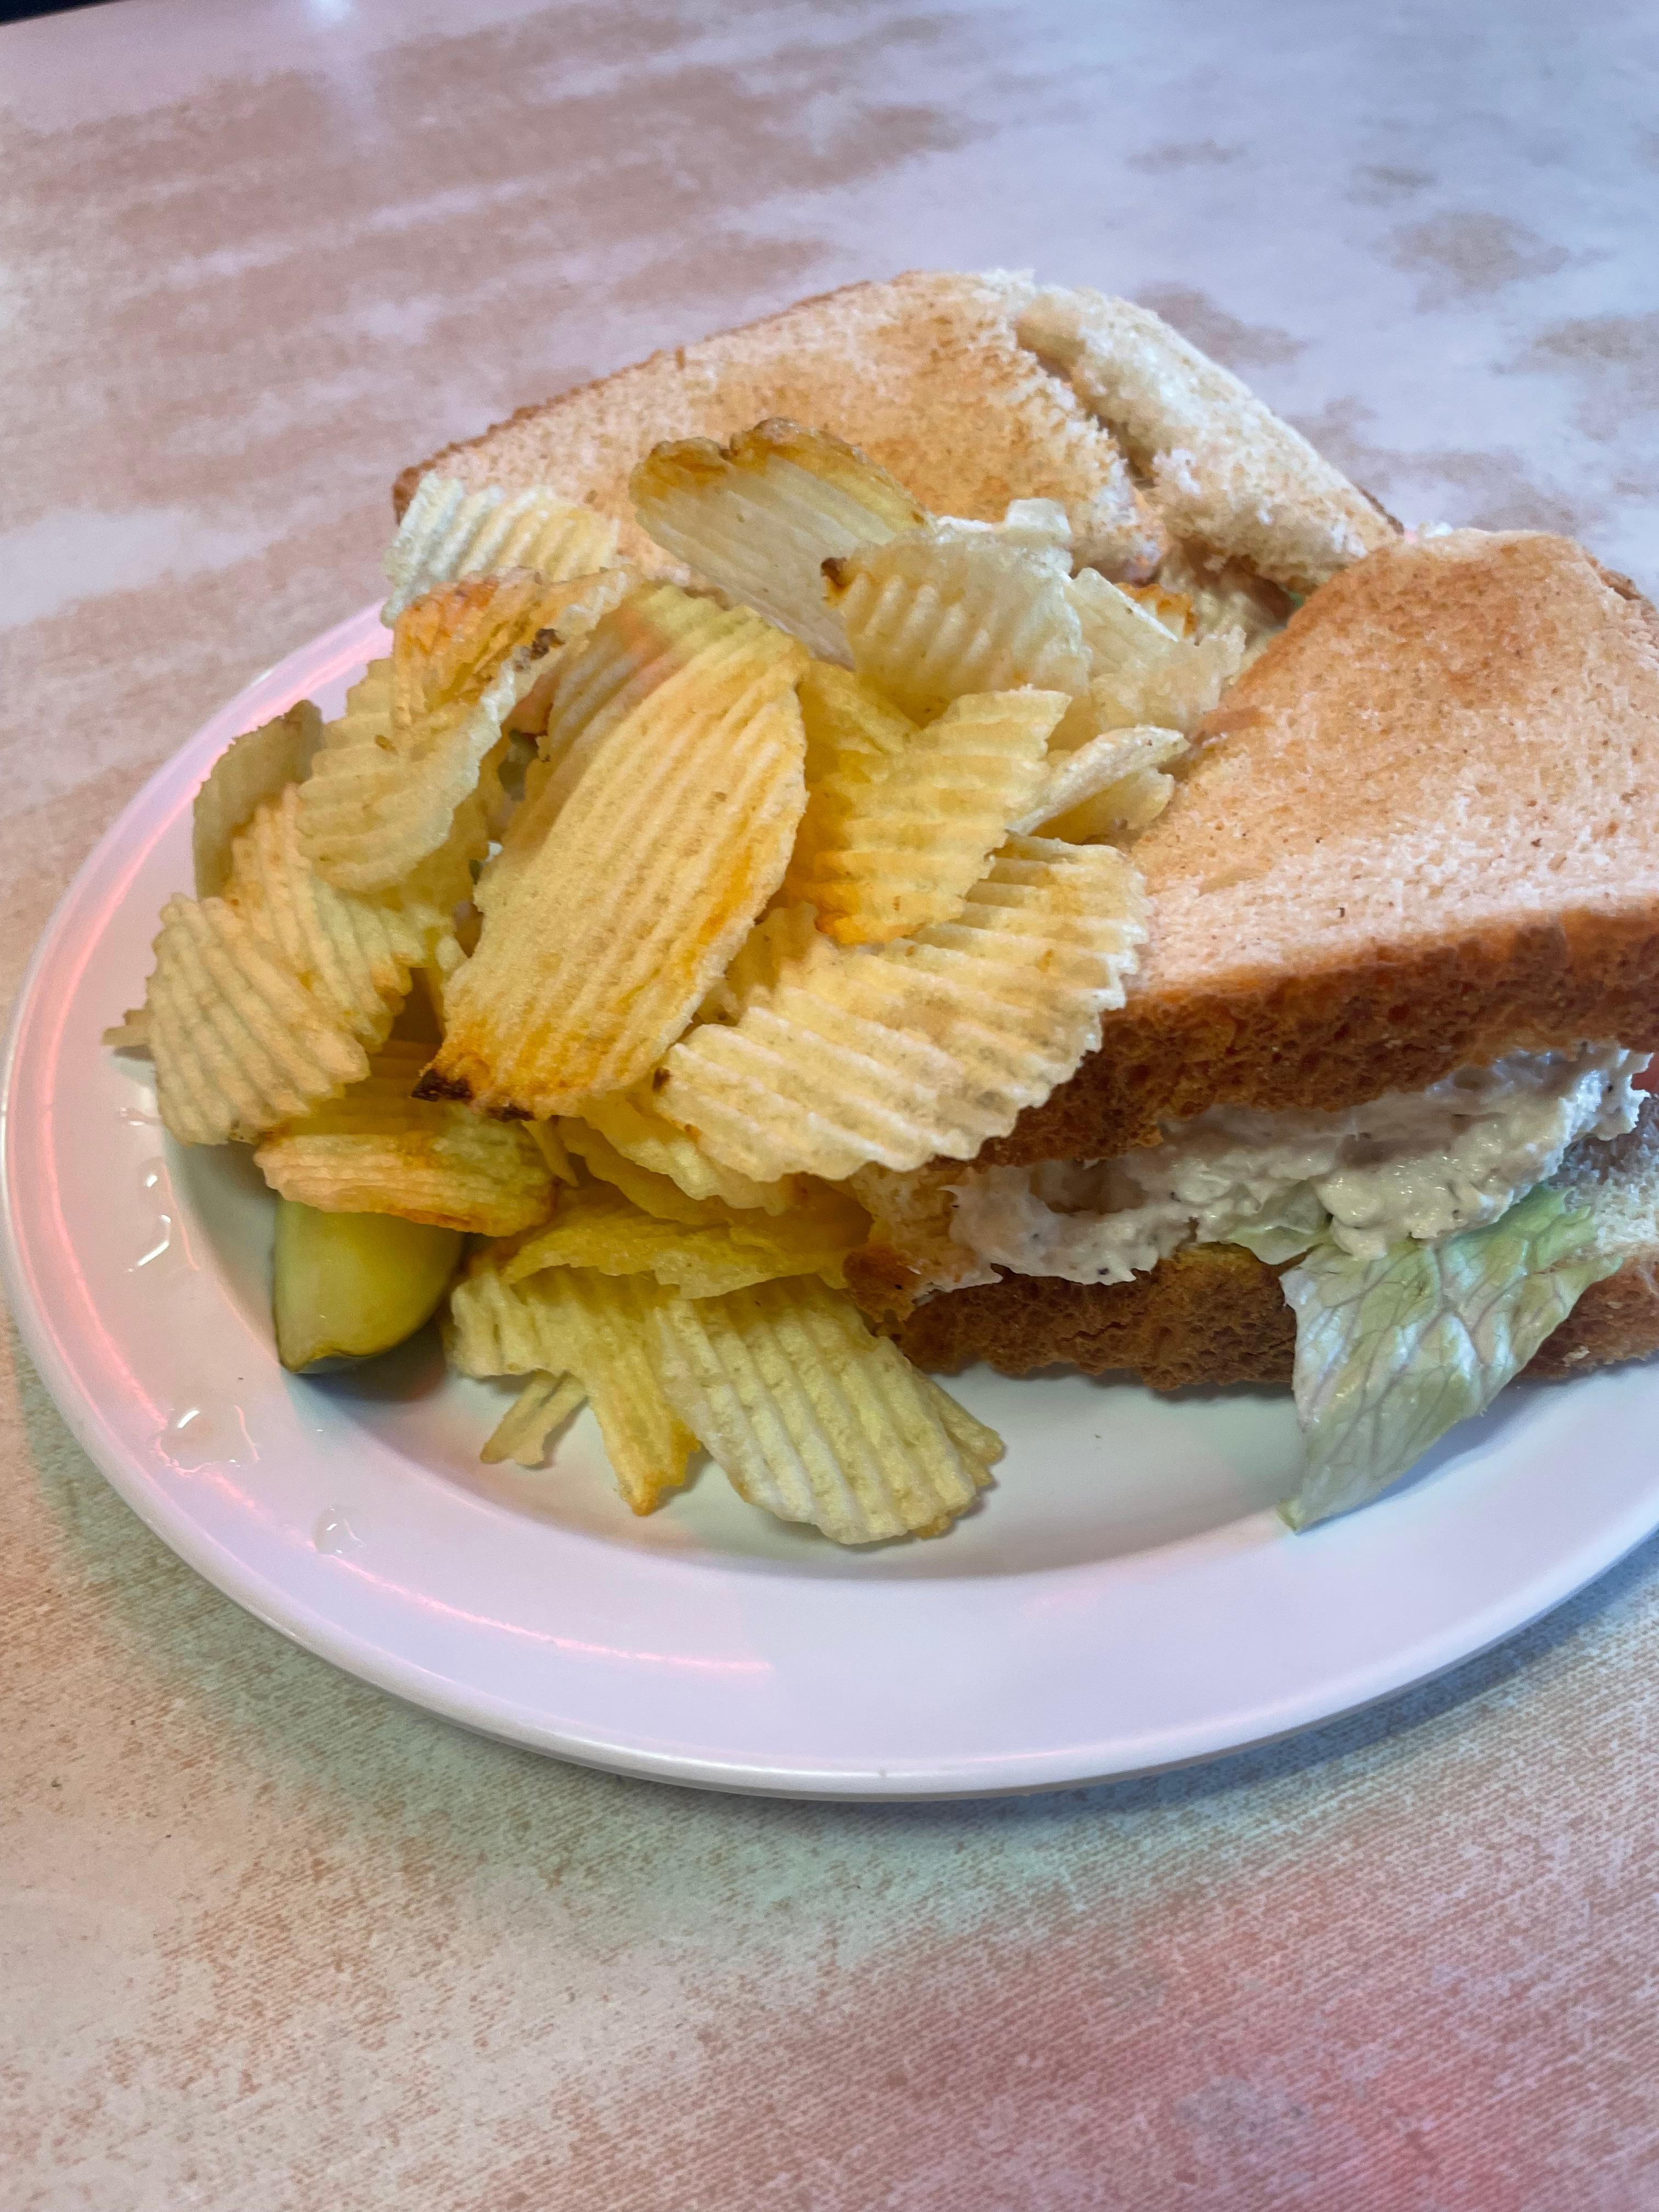 tuna salad sandwich